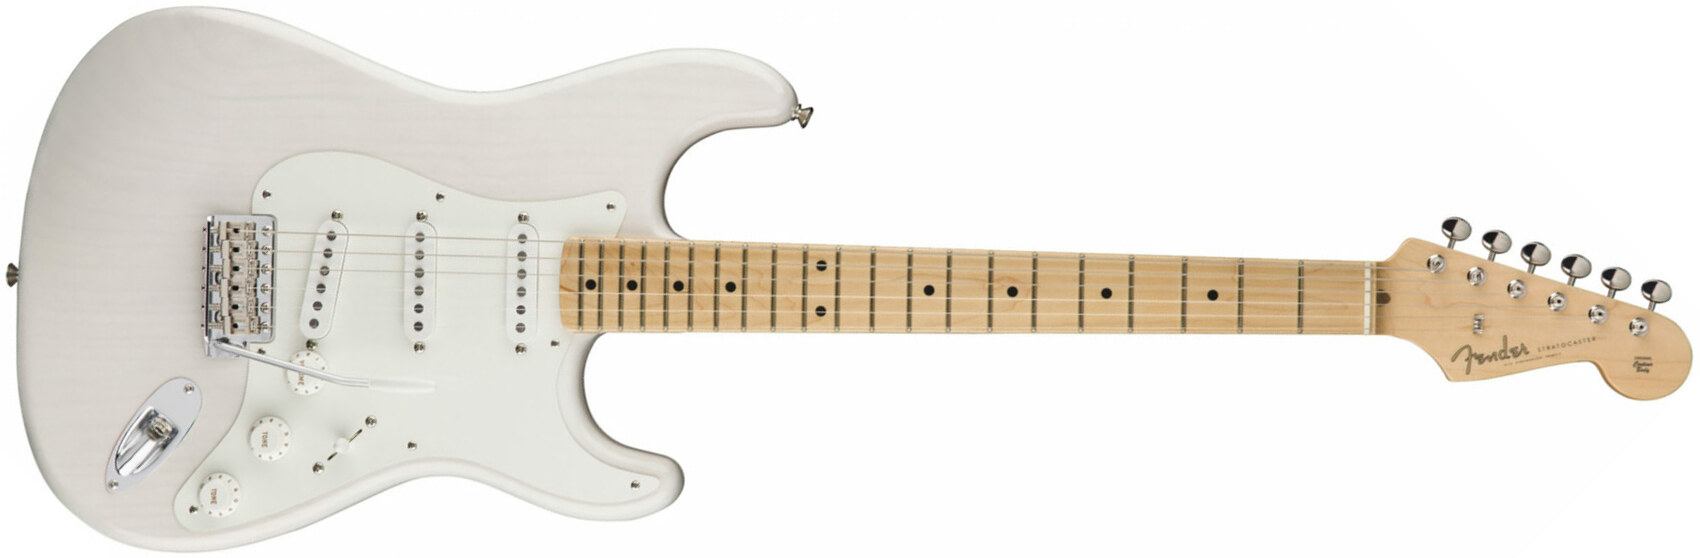 Fender Strat '50s American Original Usa Sss Mn - White Blonde - Elektrische gitaar in Str-vorm - Main picture